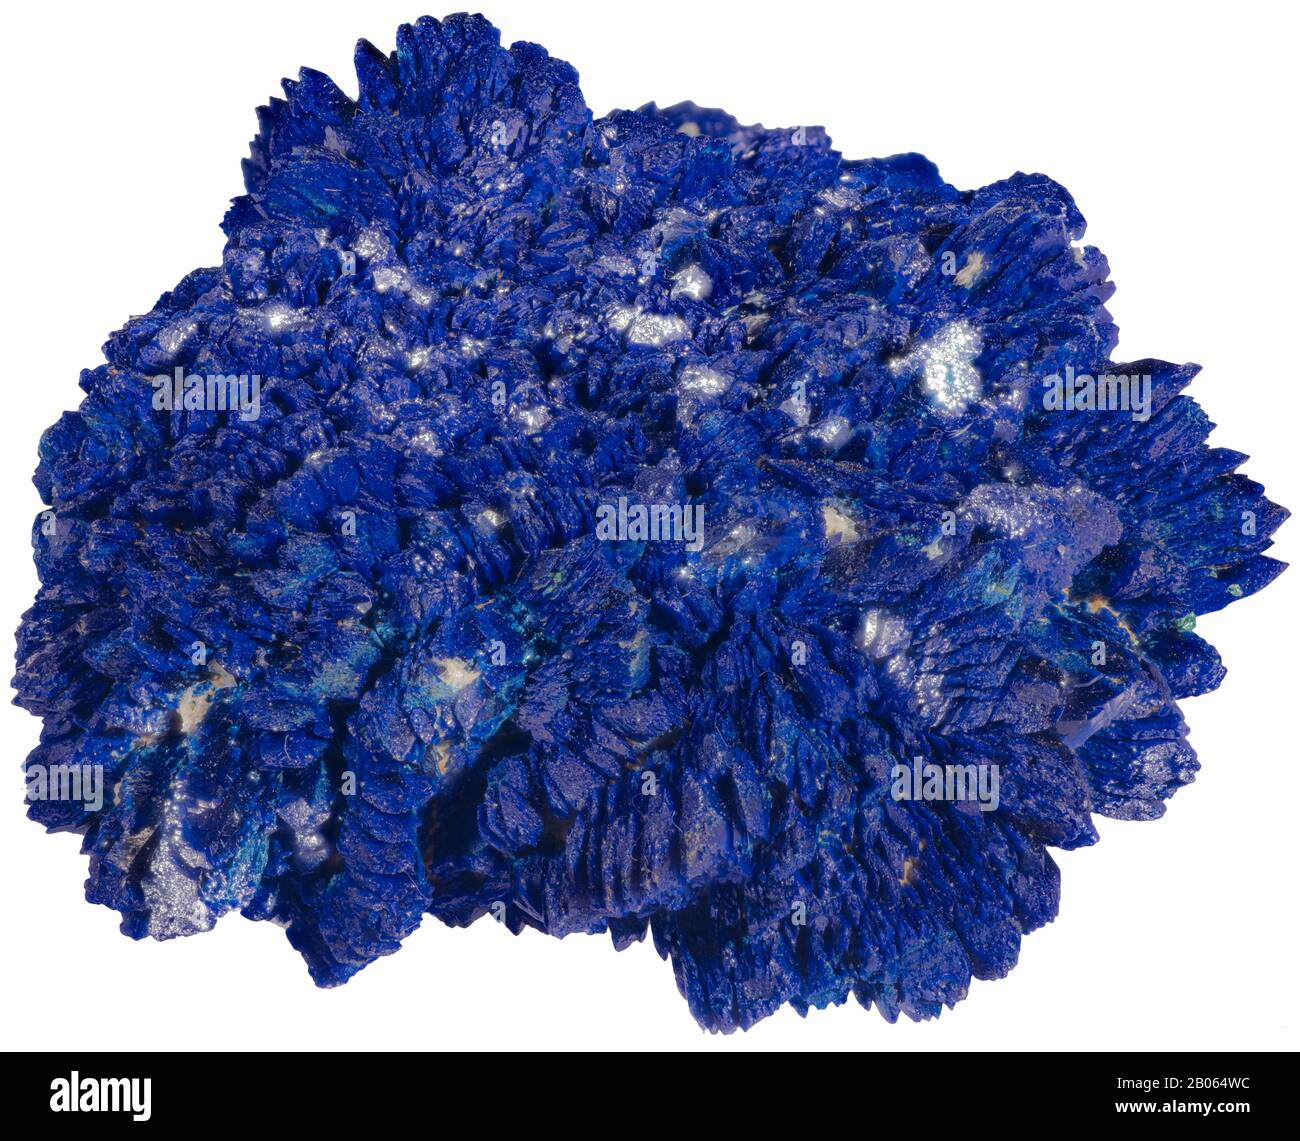 L'azurite est une pierre douce, nommée pour sa couleur « bleu azure » profonde. Il s'agit d'un minéral de carbonate de cuivre trouvé dans les parties oxydées supérieures du minerai de cuivre FO Banque D'Images